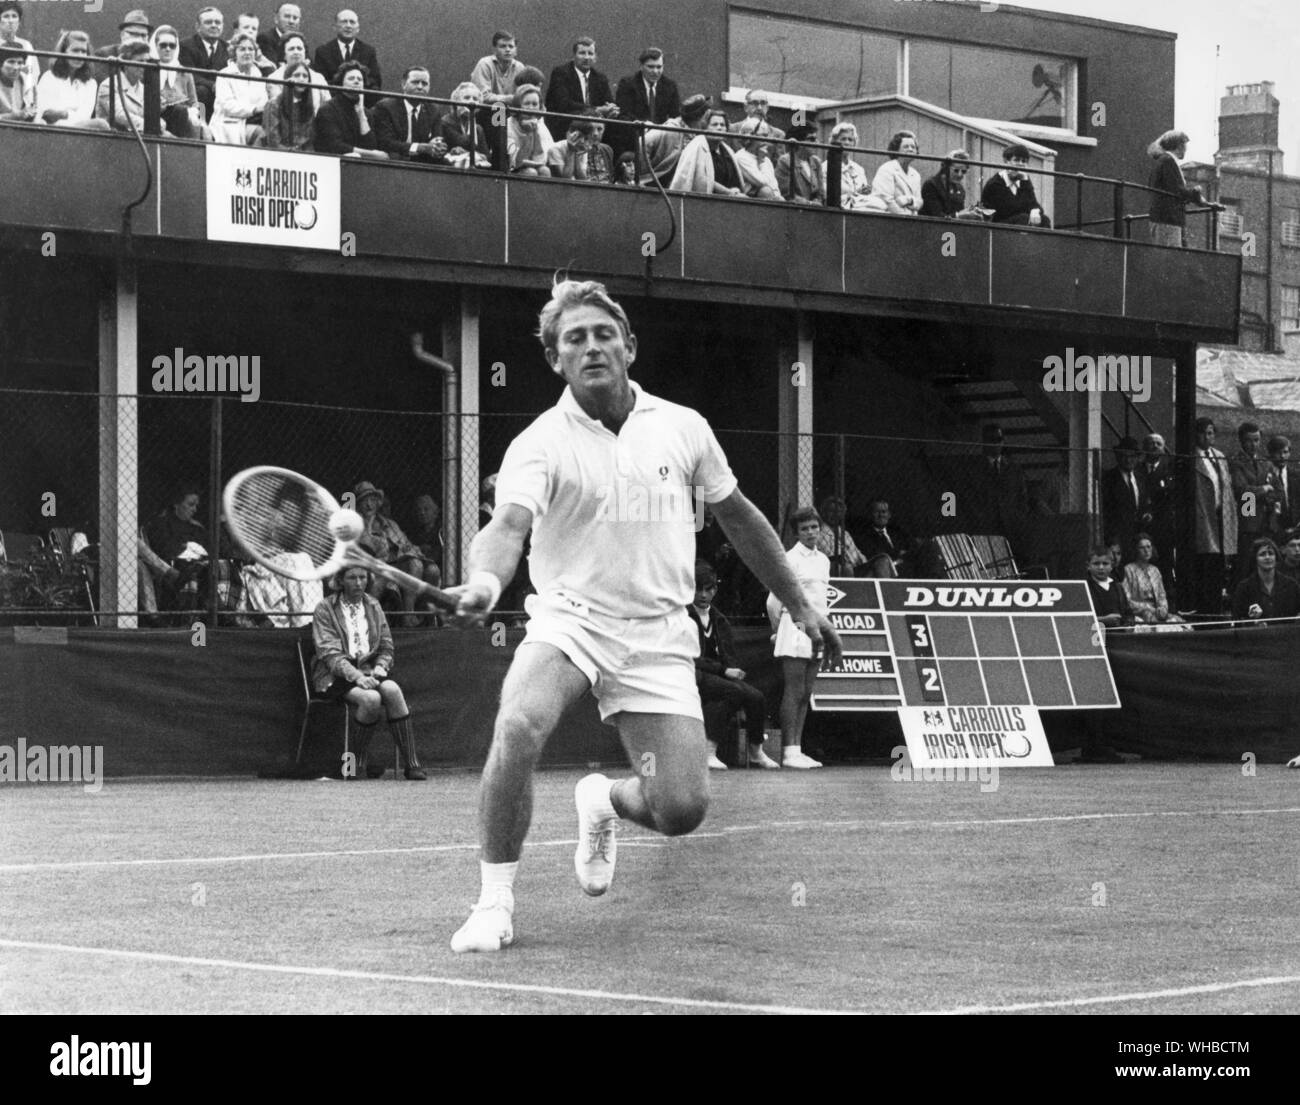 Lew Hoad - Australische Tennisspieler im Spiel an den irischen Meisterschaften. Lewis Alan (Lew) Hoad (* 23. November 1934 in Glebe, New South Wales, Australien, Juli 3, 1994 gestorben in Fuengirola, Spanien) war ein Champion tennis player. als einer der 21 besten Spieler aller Zeiten eingestuft. Für fünf Jahre, beginnend im Jahr 1952, war er in den Top Ten für Amateure geordnet und erreichte die Nr. 1 in 1956. Stockfoto